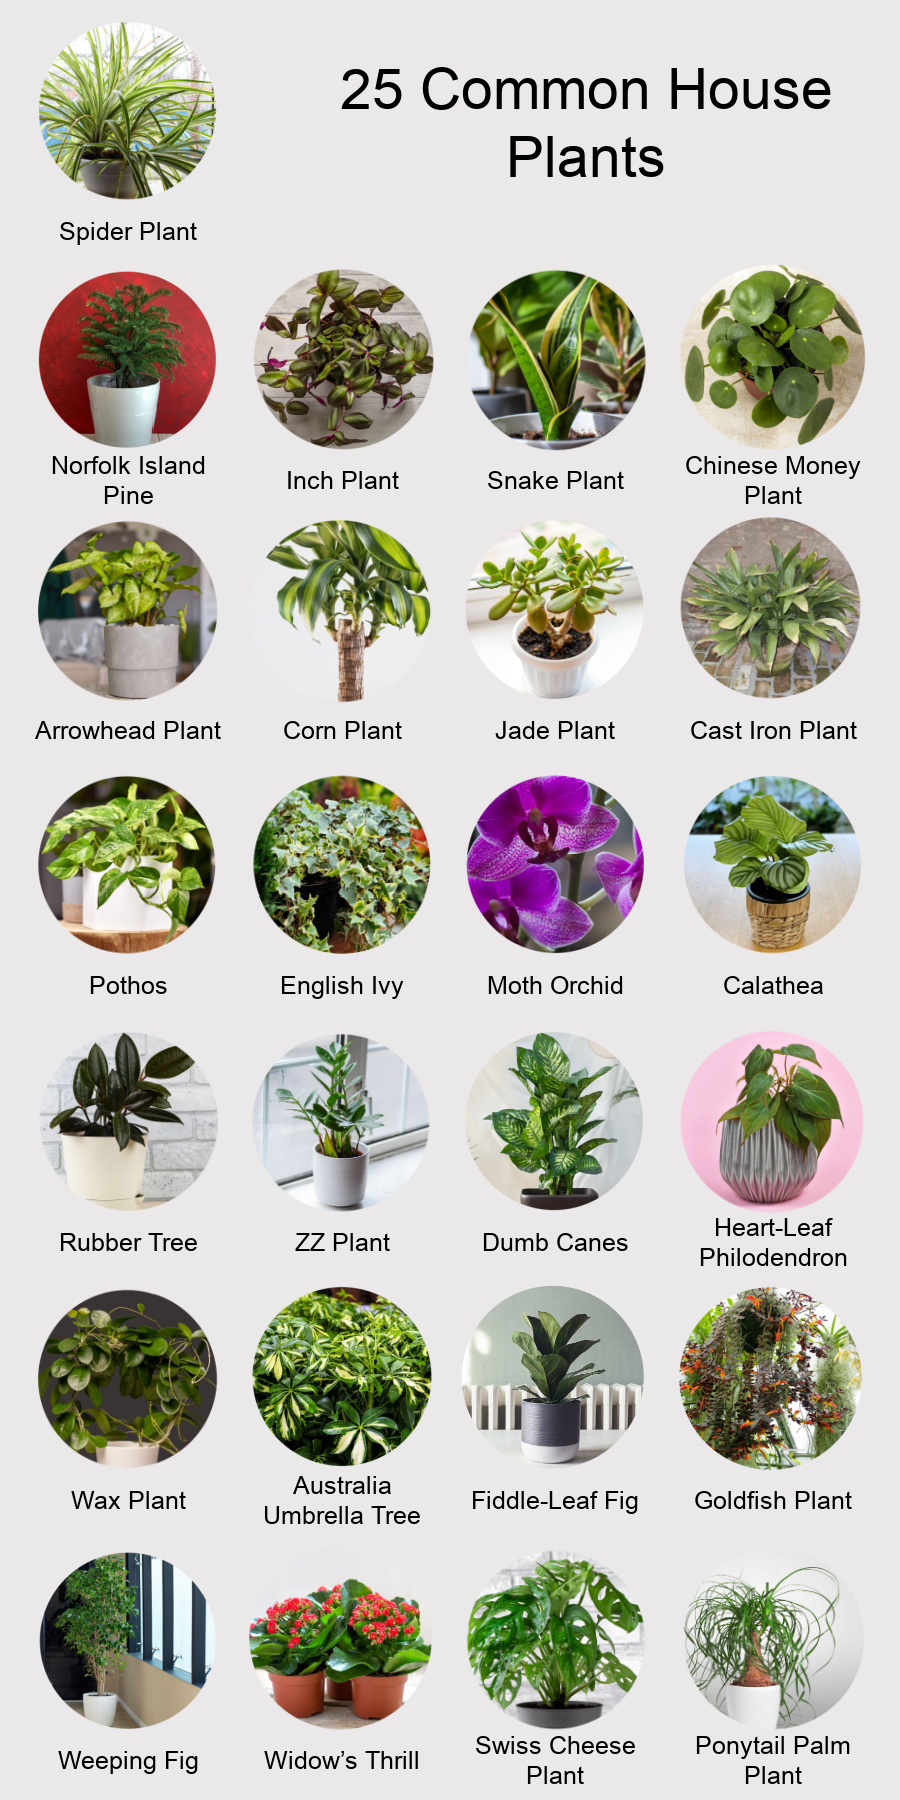 Common House Plants